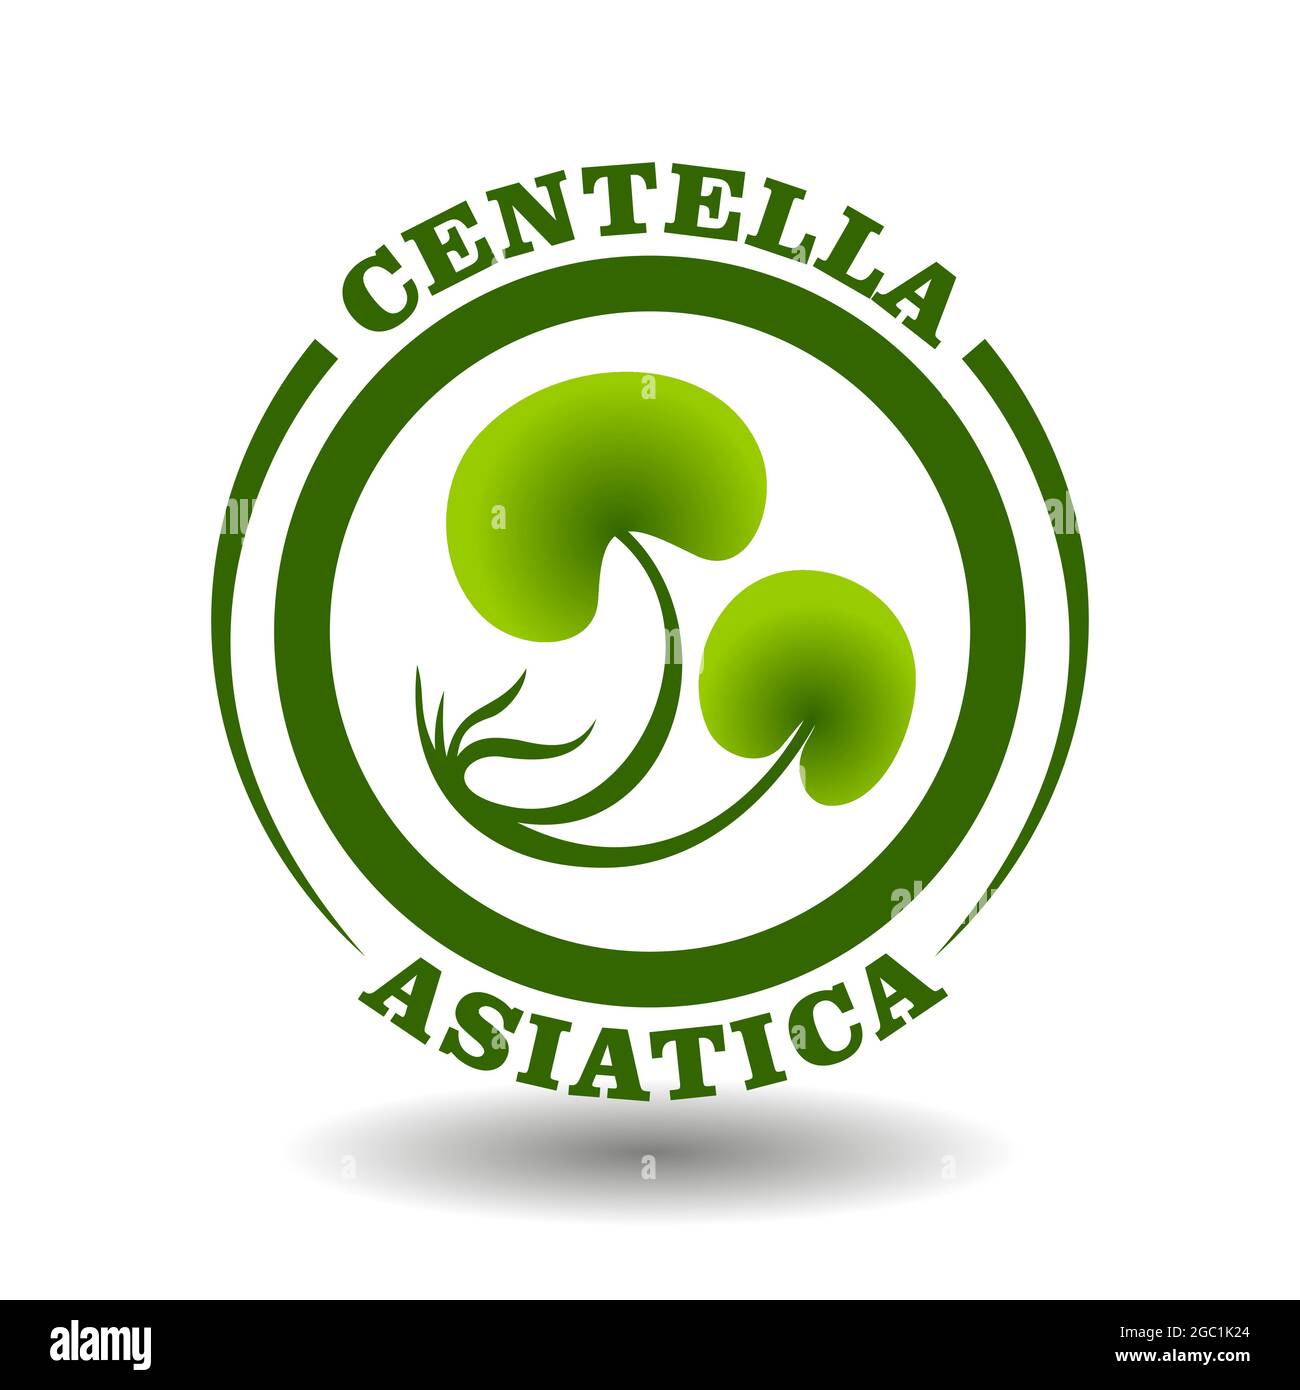 Logo Vector Circle Centella Asiatica avec symbole de feuilles vertes dans un pictogramme rond pour le signe des cosmétiques biologiques, étiquettes d'étiquetage des aliments naturels et aurveda HE Illustration de Vecteur